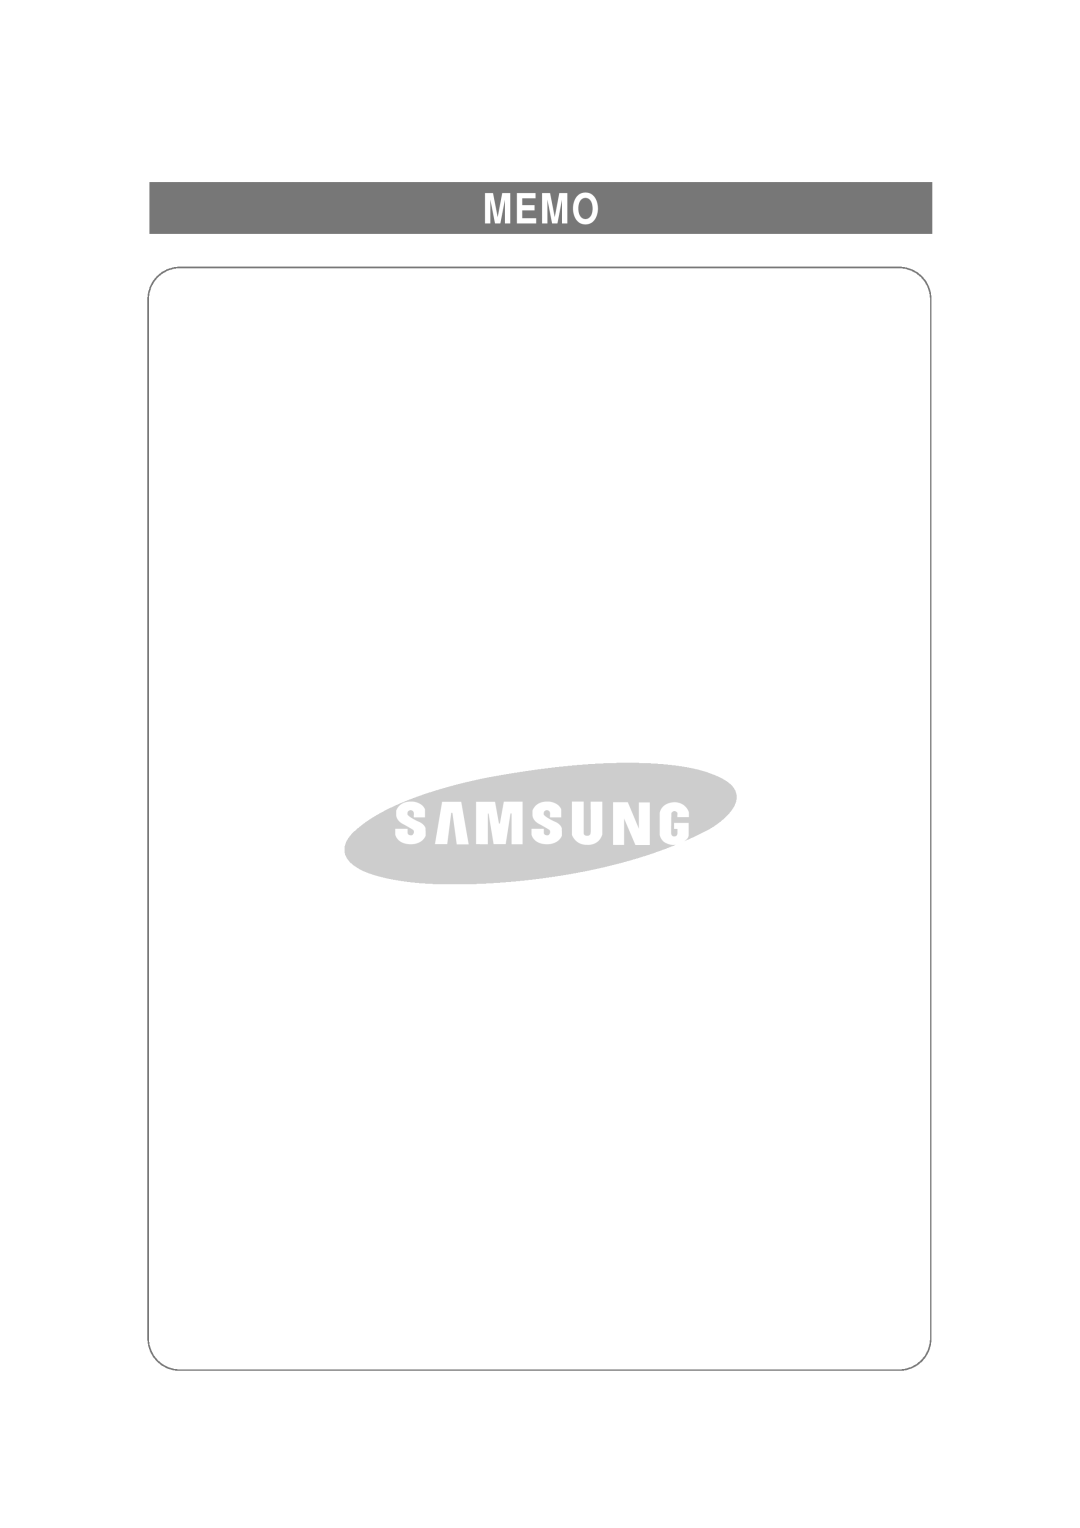 Samsung RSE8F, RSE8N, RSE8B manual Memo 